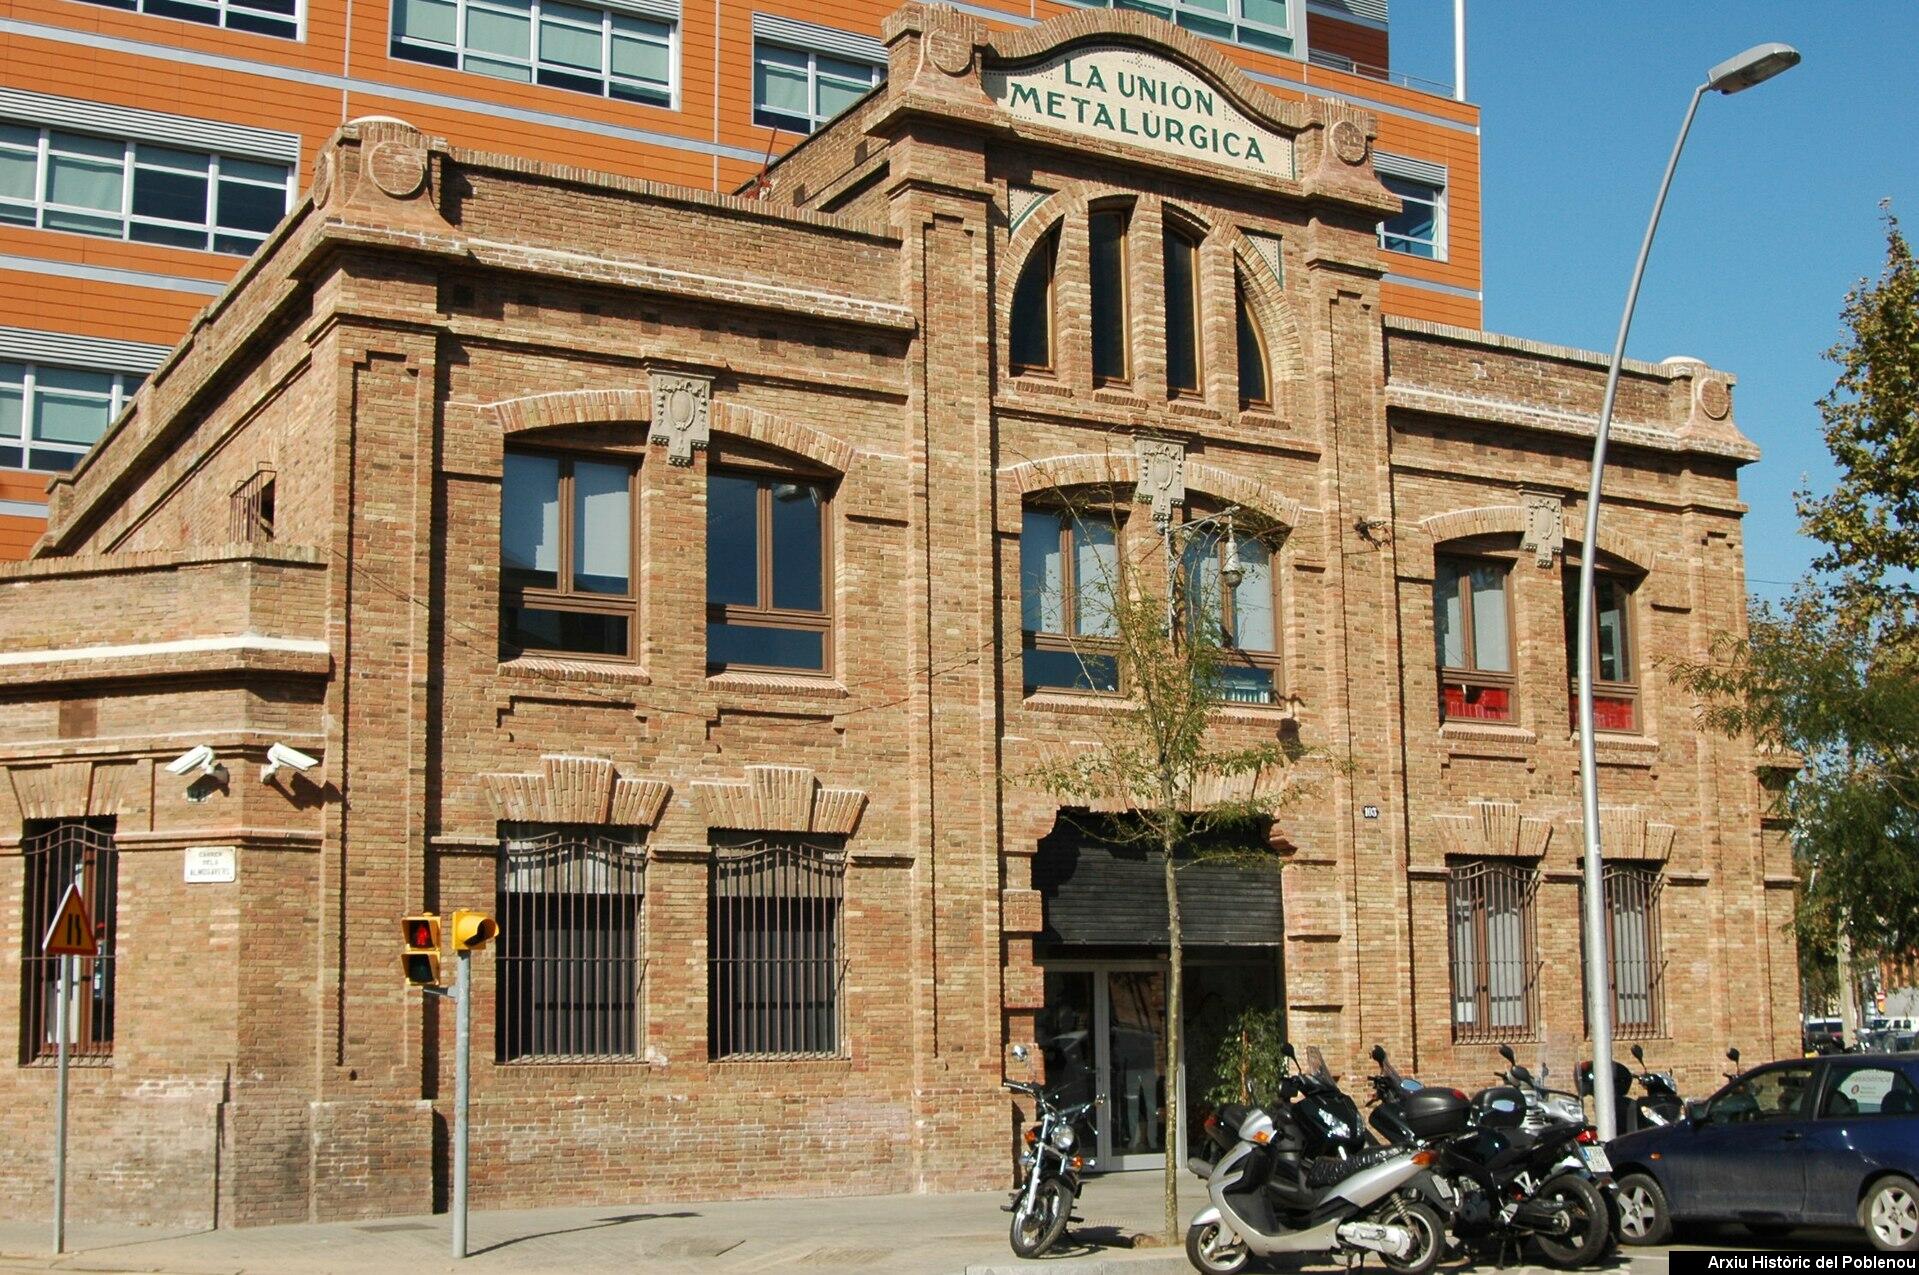 19166 La Unión Metalúrgica [2009]